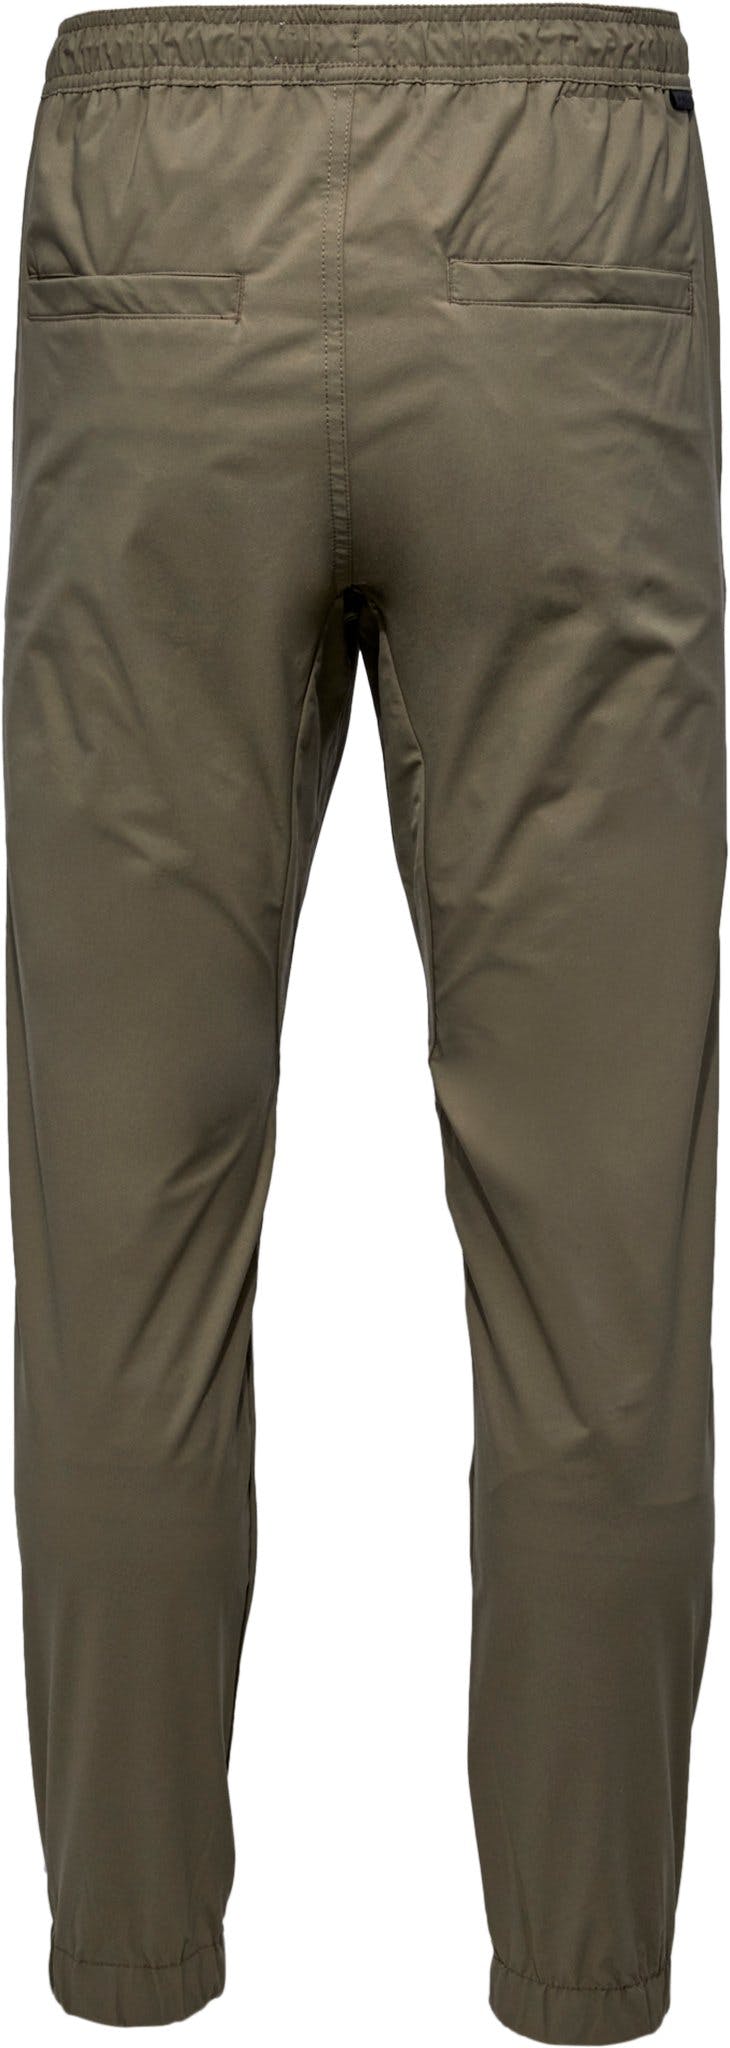 Numéro de l'image de la galerie de produits 2 pour le produit Pantalon de jogging technique léger - Homme